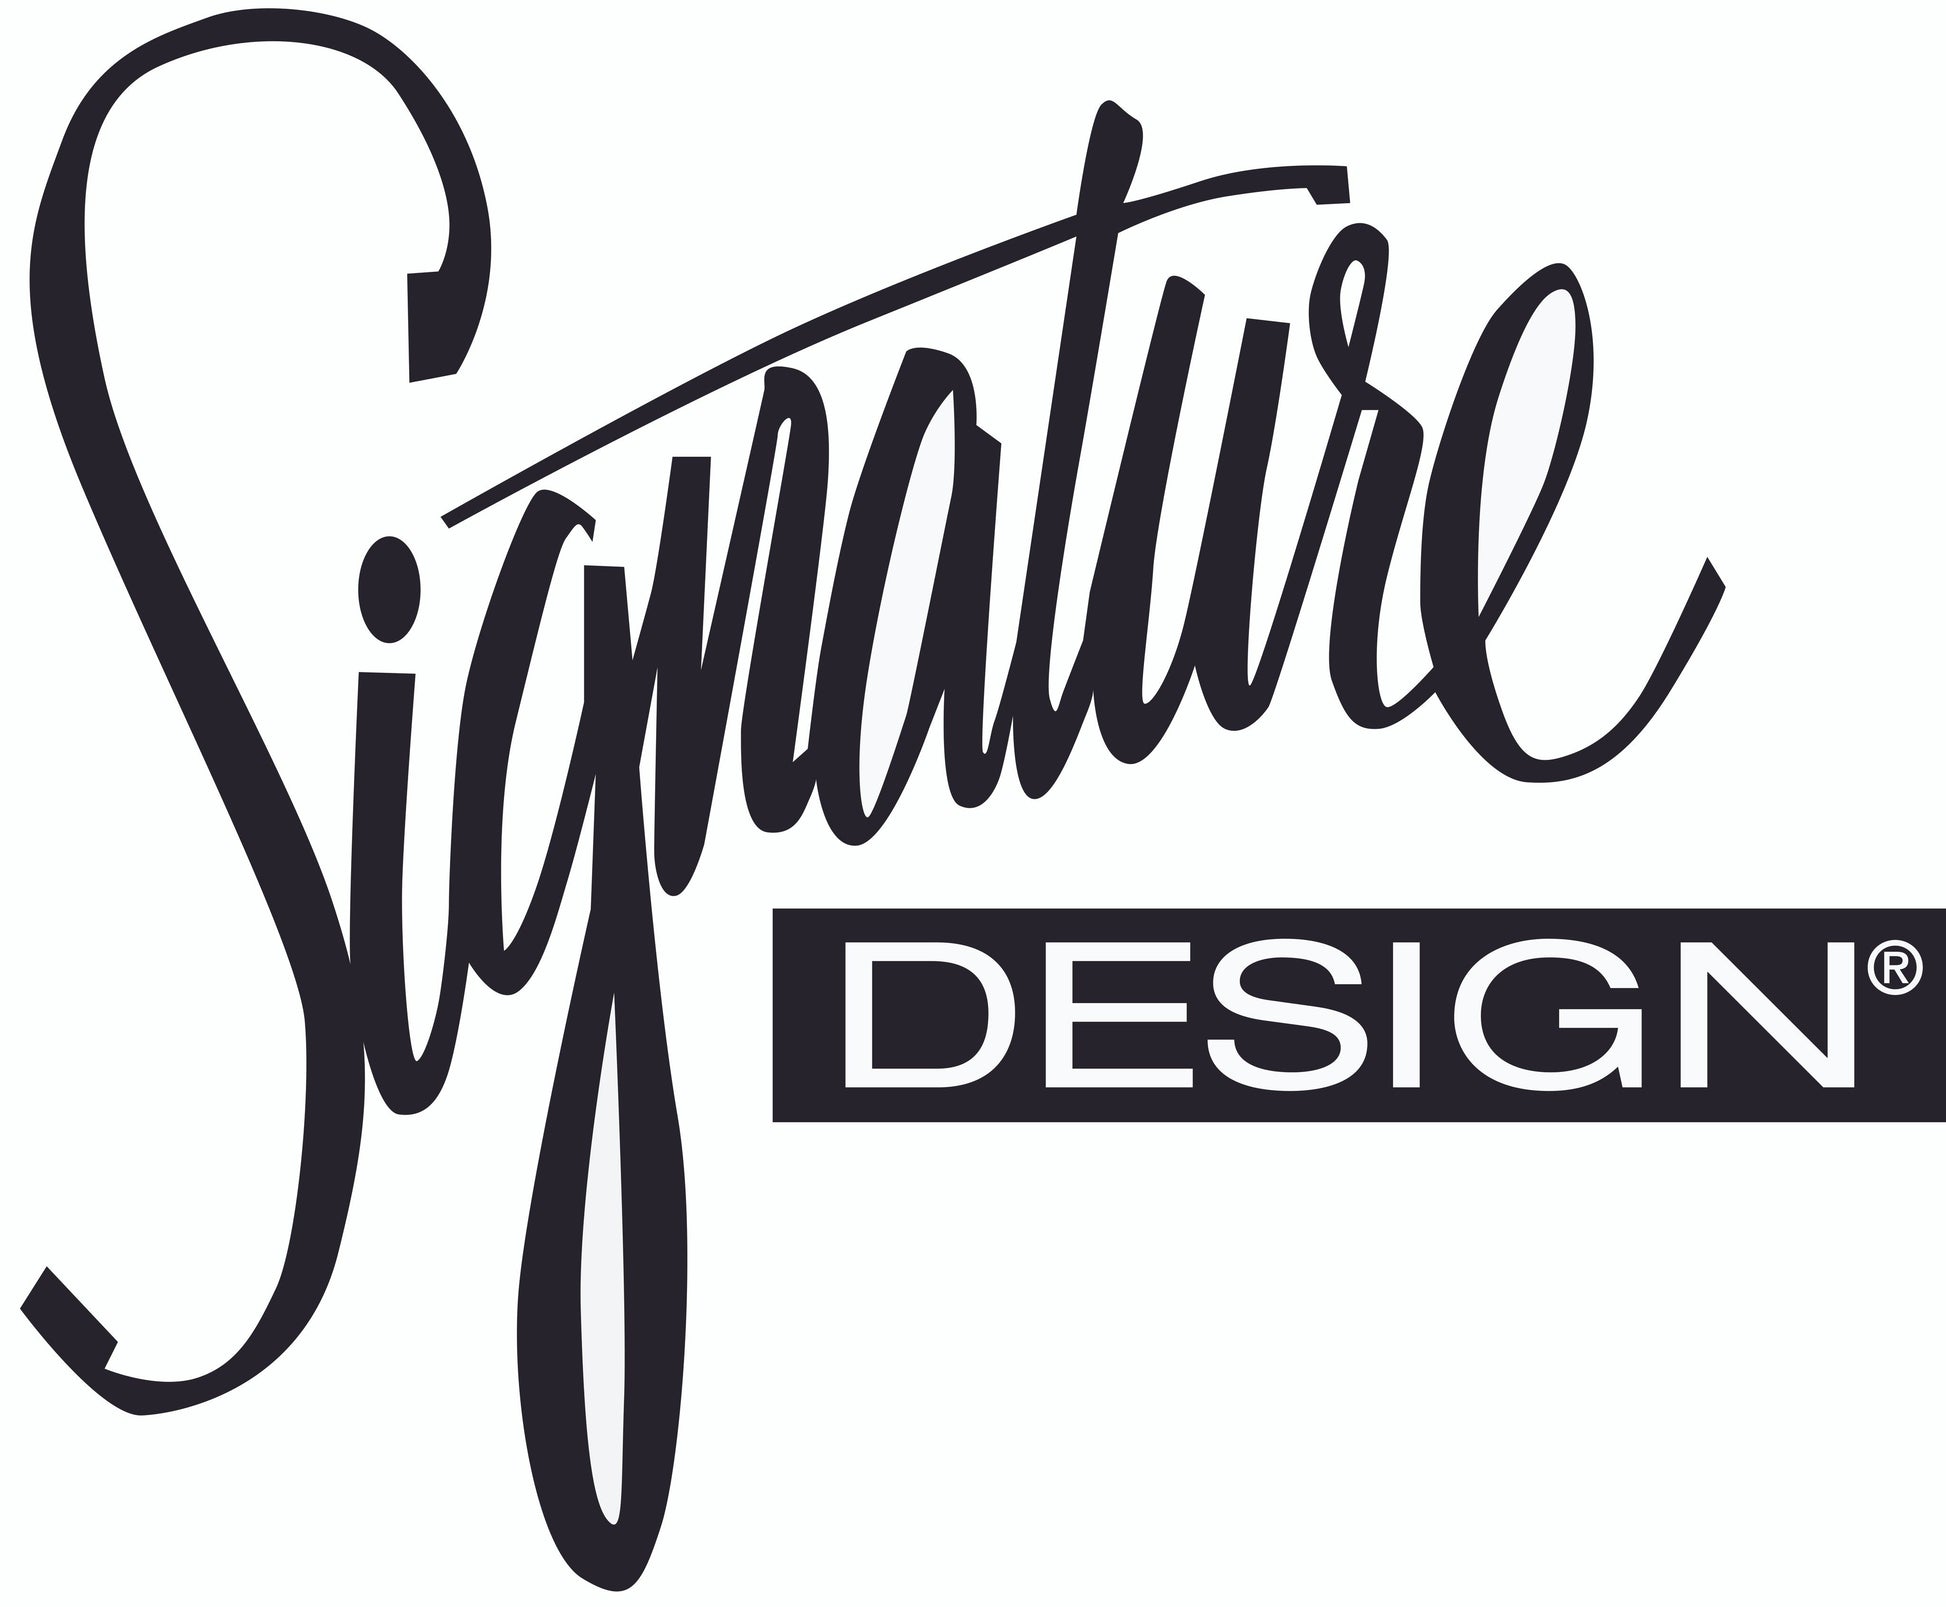 Caretti Loveseat Signature Design by Ashley®